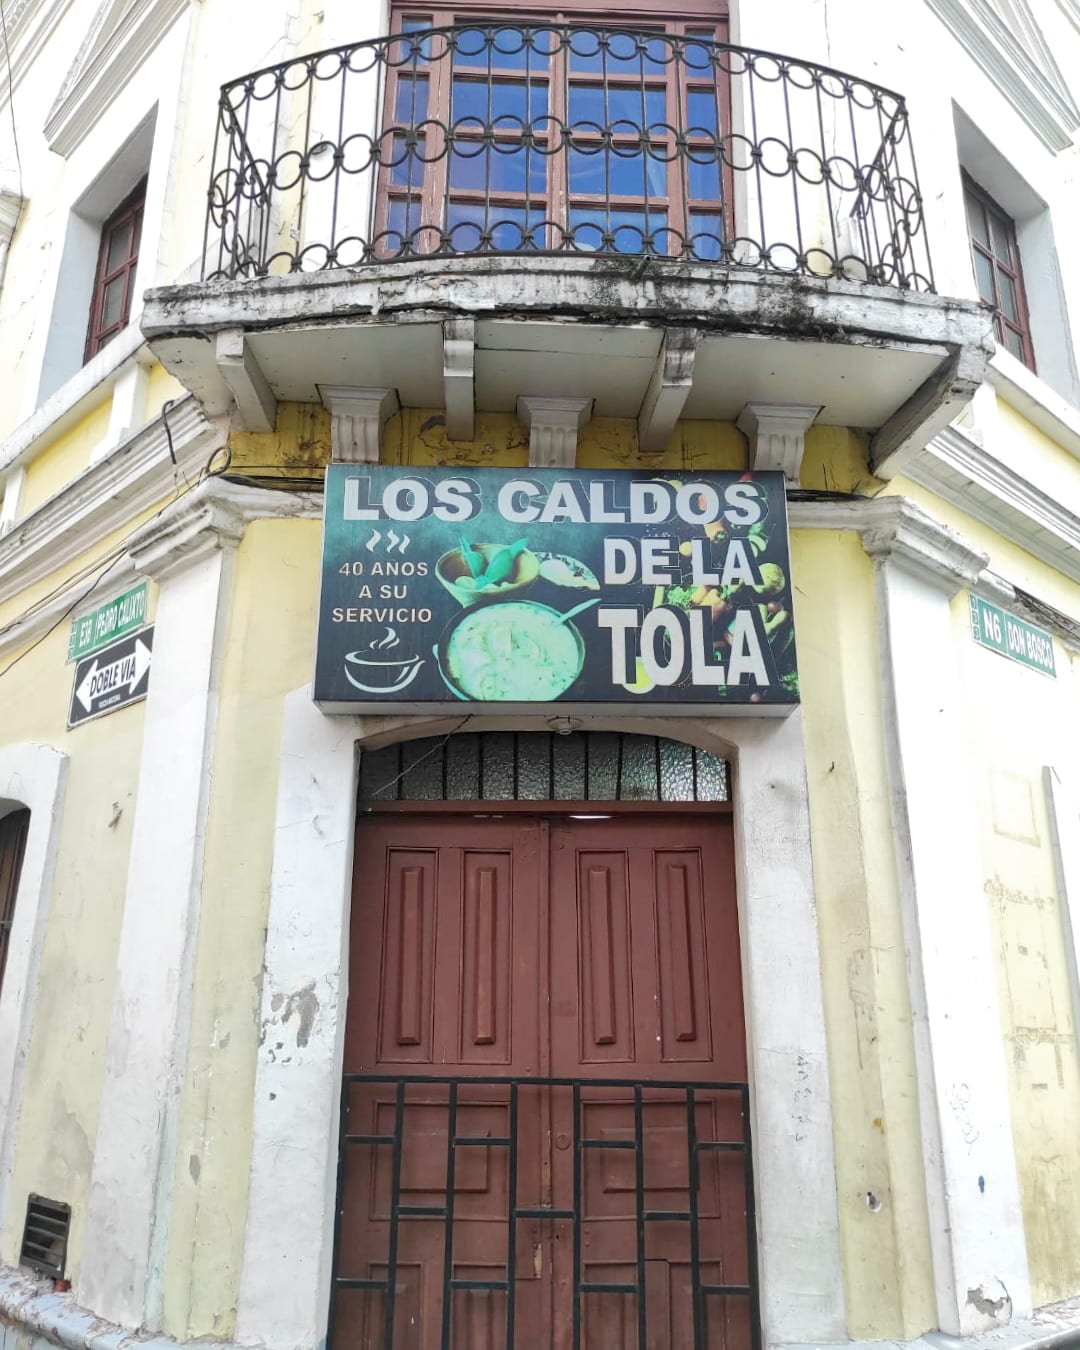 A sign above a wooden door says "Los Caldos de La Tola"